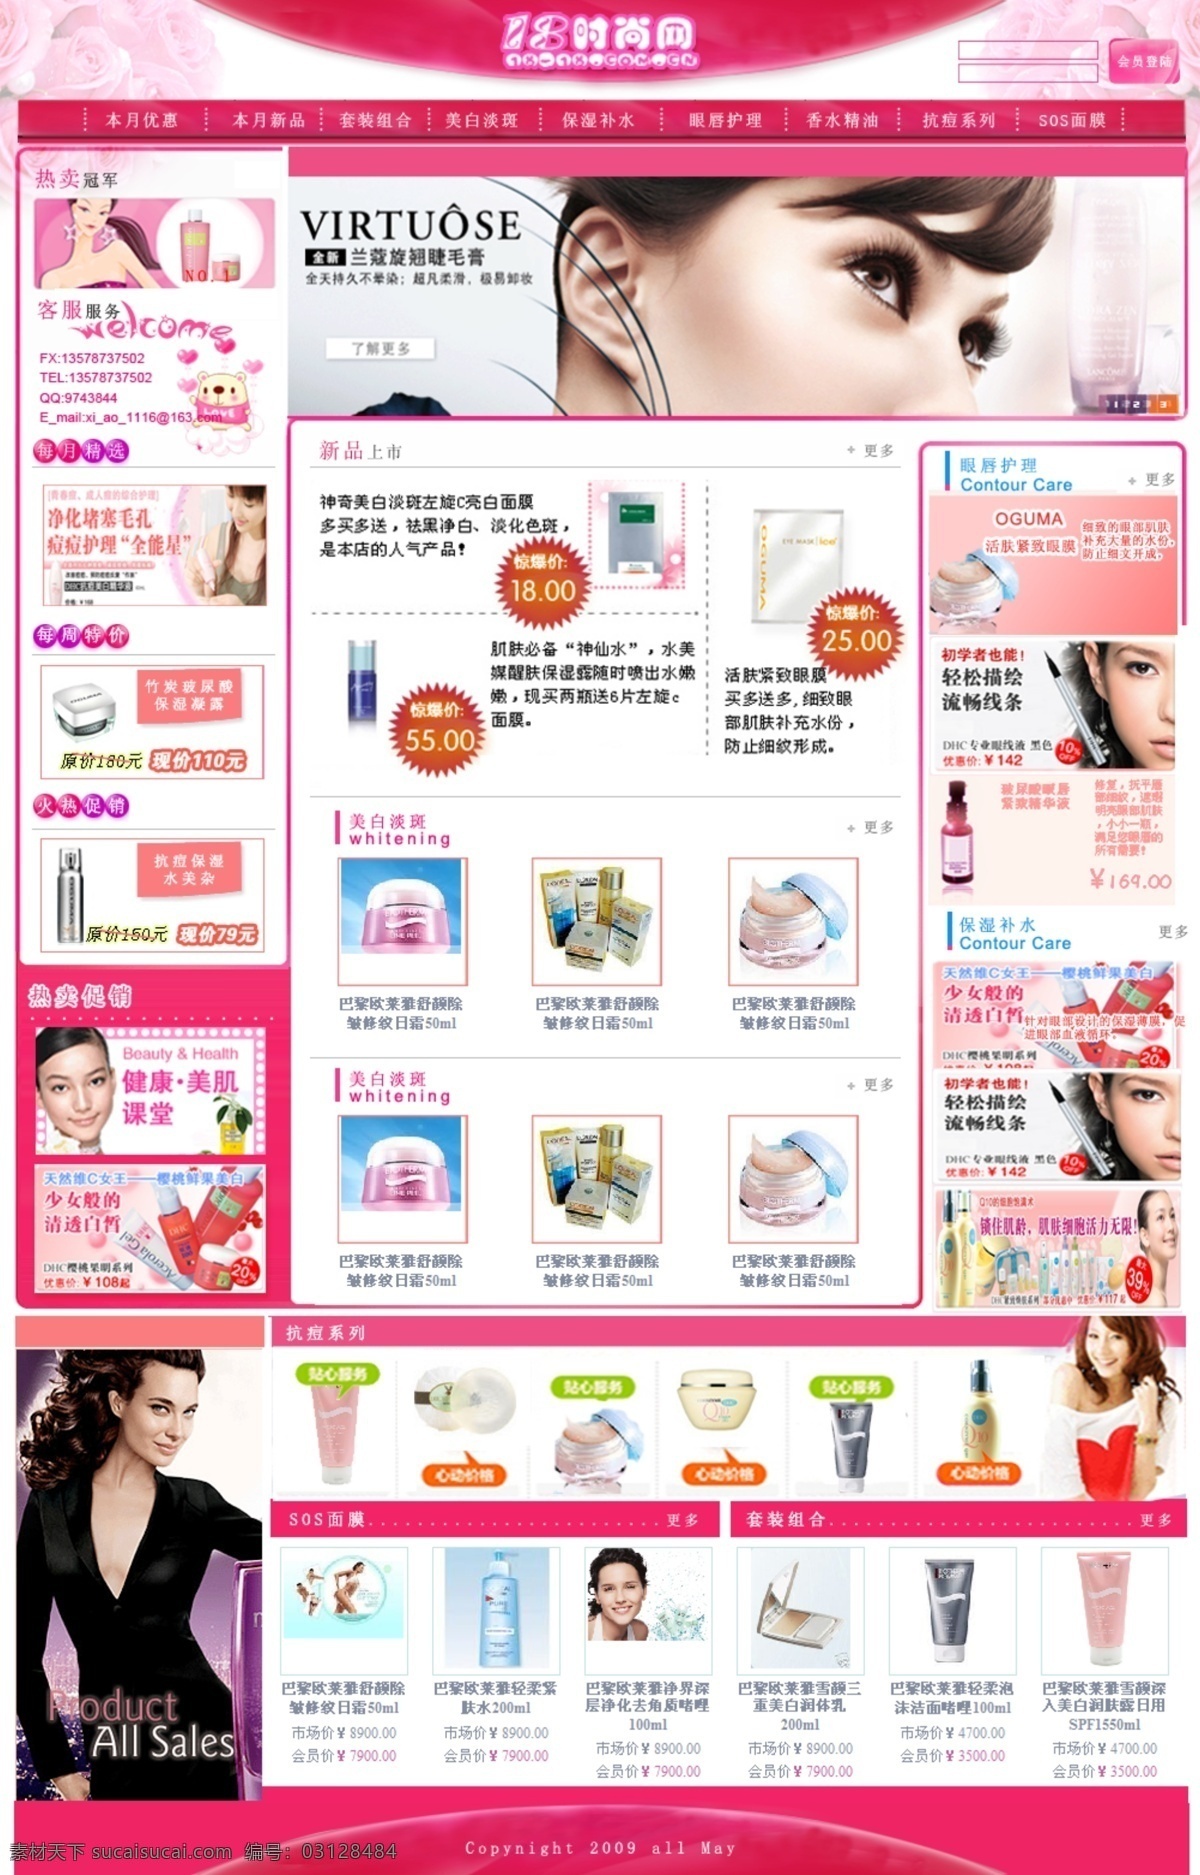 化妆品 商城 化妆品网页 化妆品网站 女性网站 化妆品商城 时尚网 网页素材 网页模板